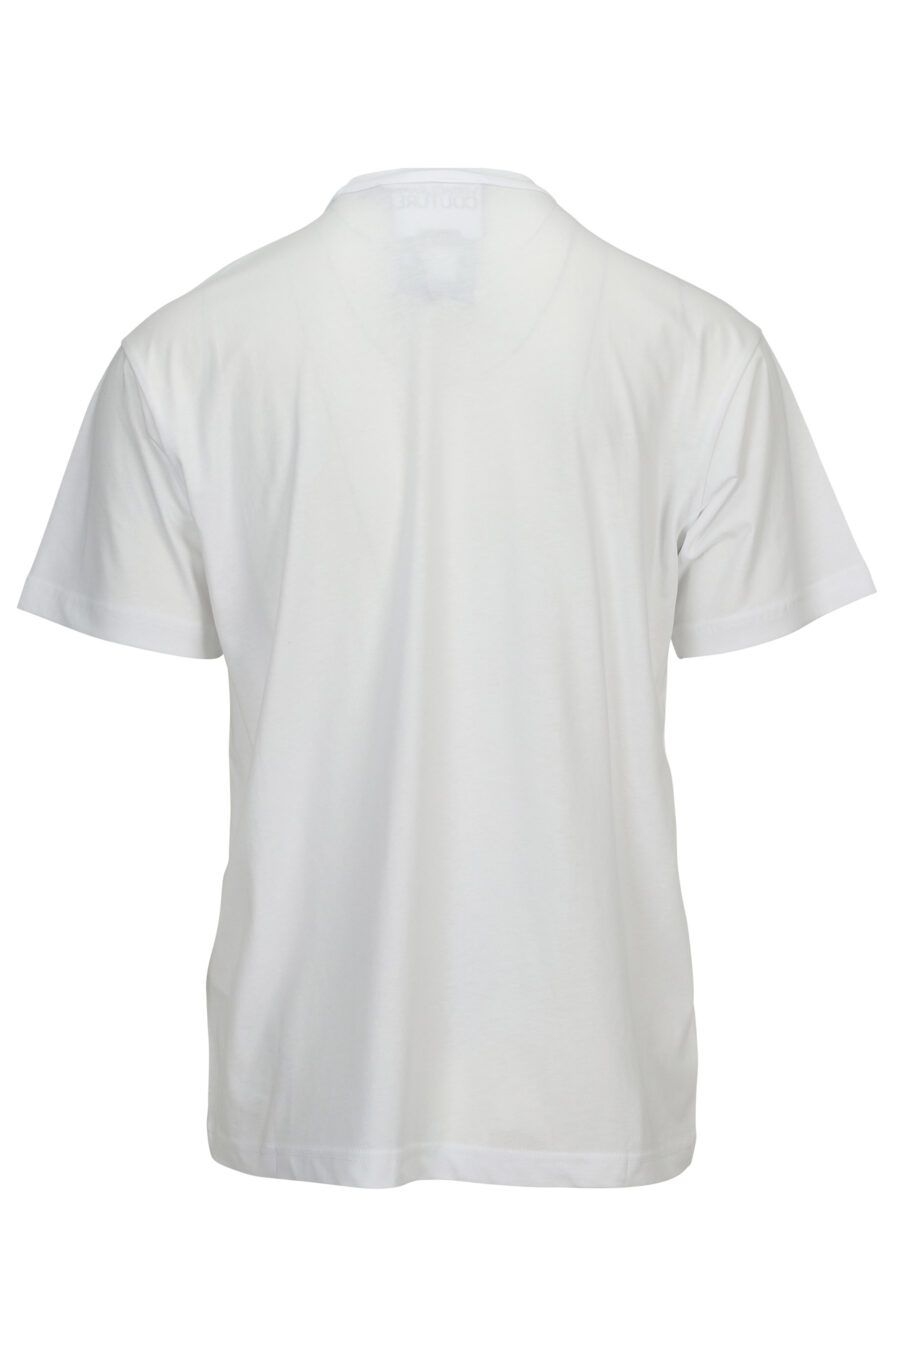 T-shirt branca com maxilogo preto na frente - 8052019579666 1